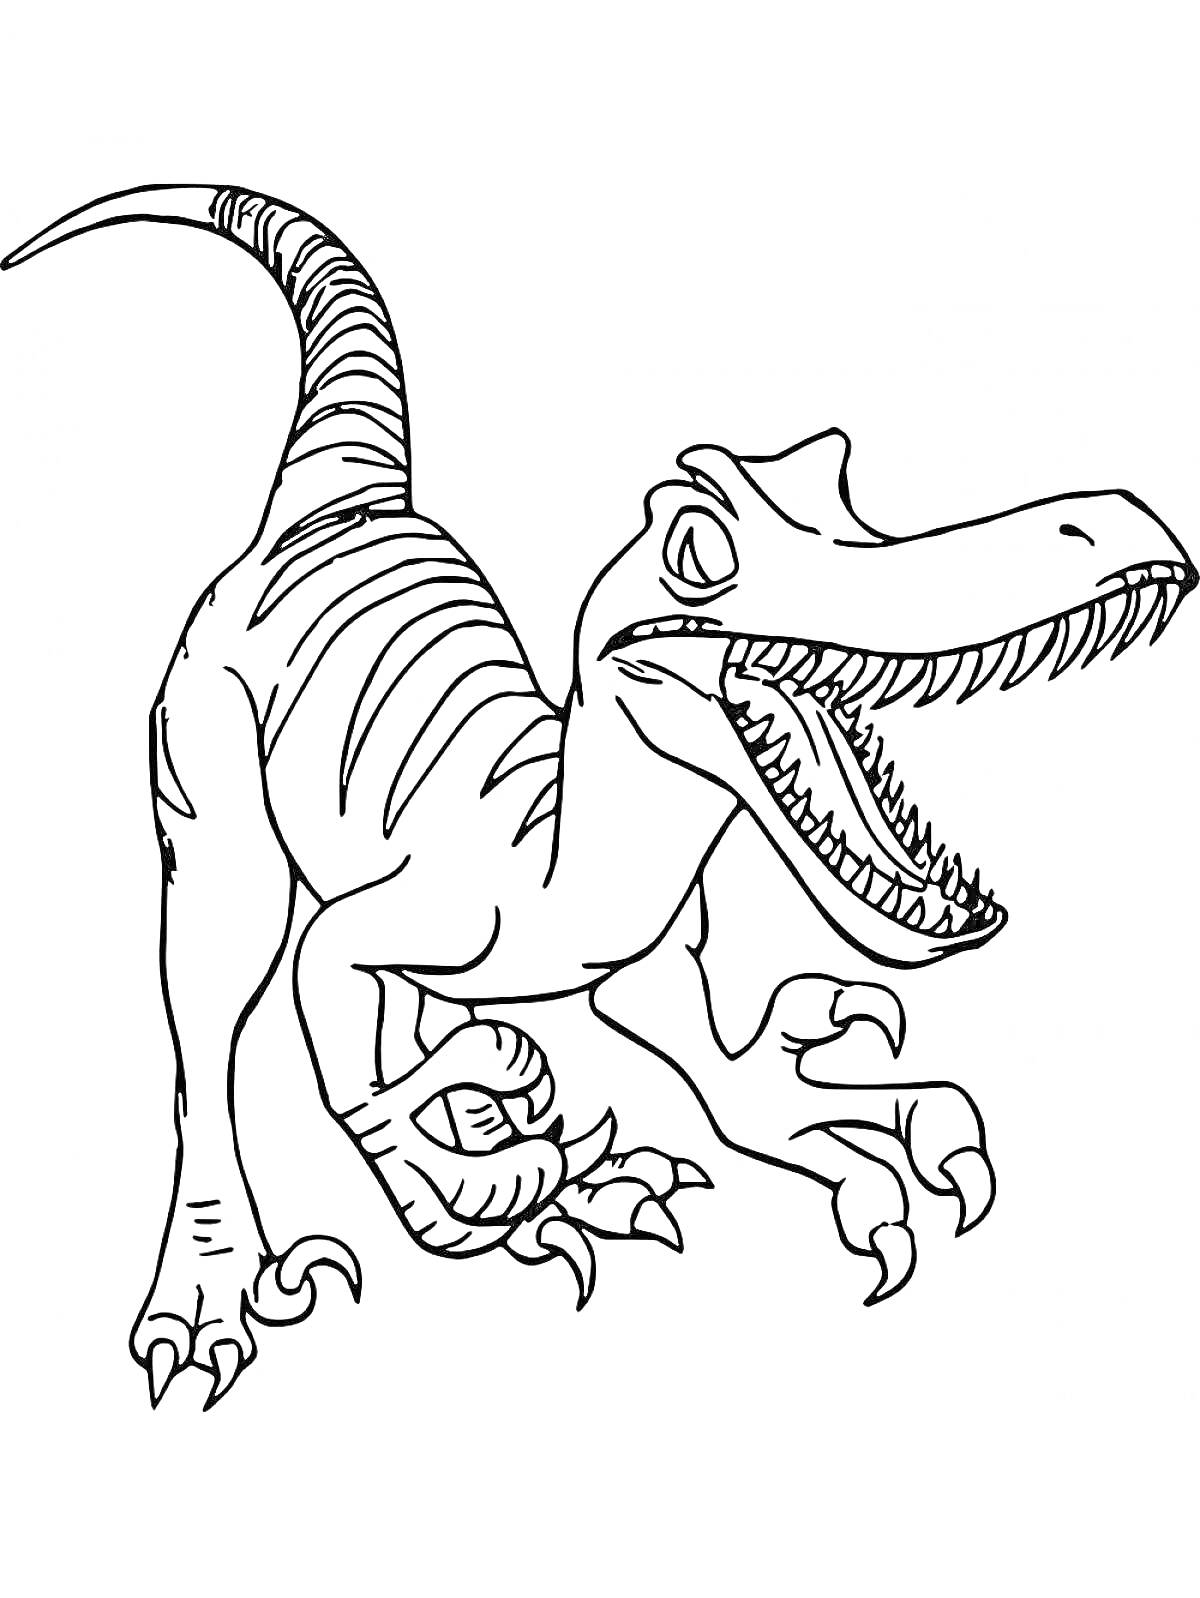 Раскраска Динозавр с открытой пастью, вытянутым хвостом и когтями на лапах